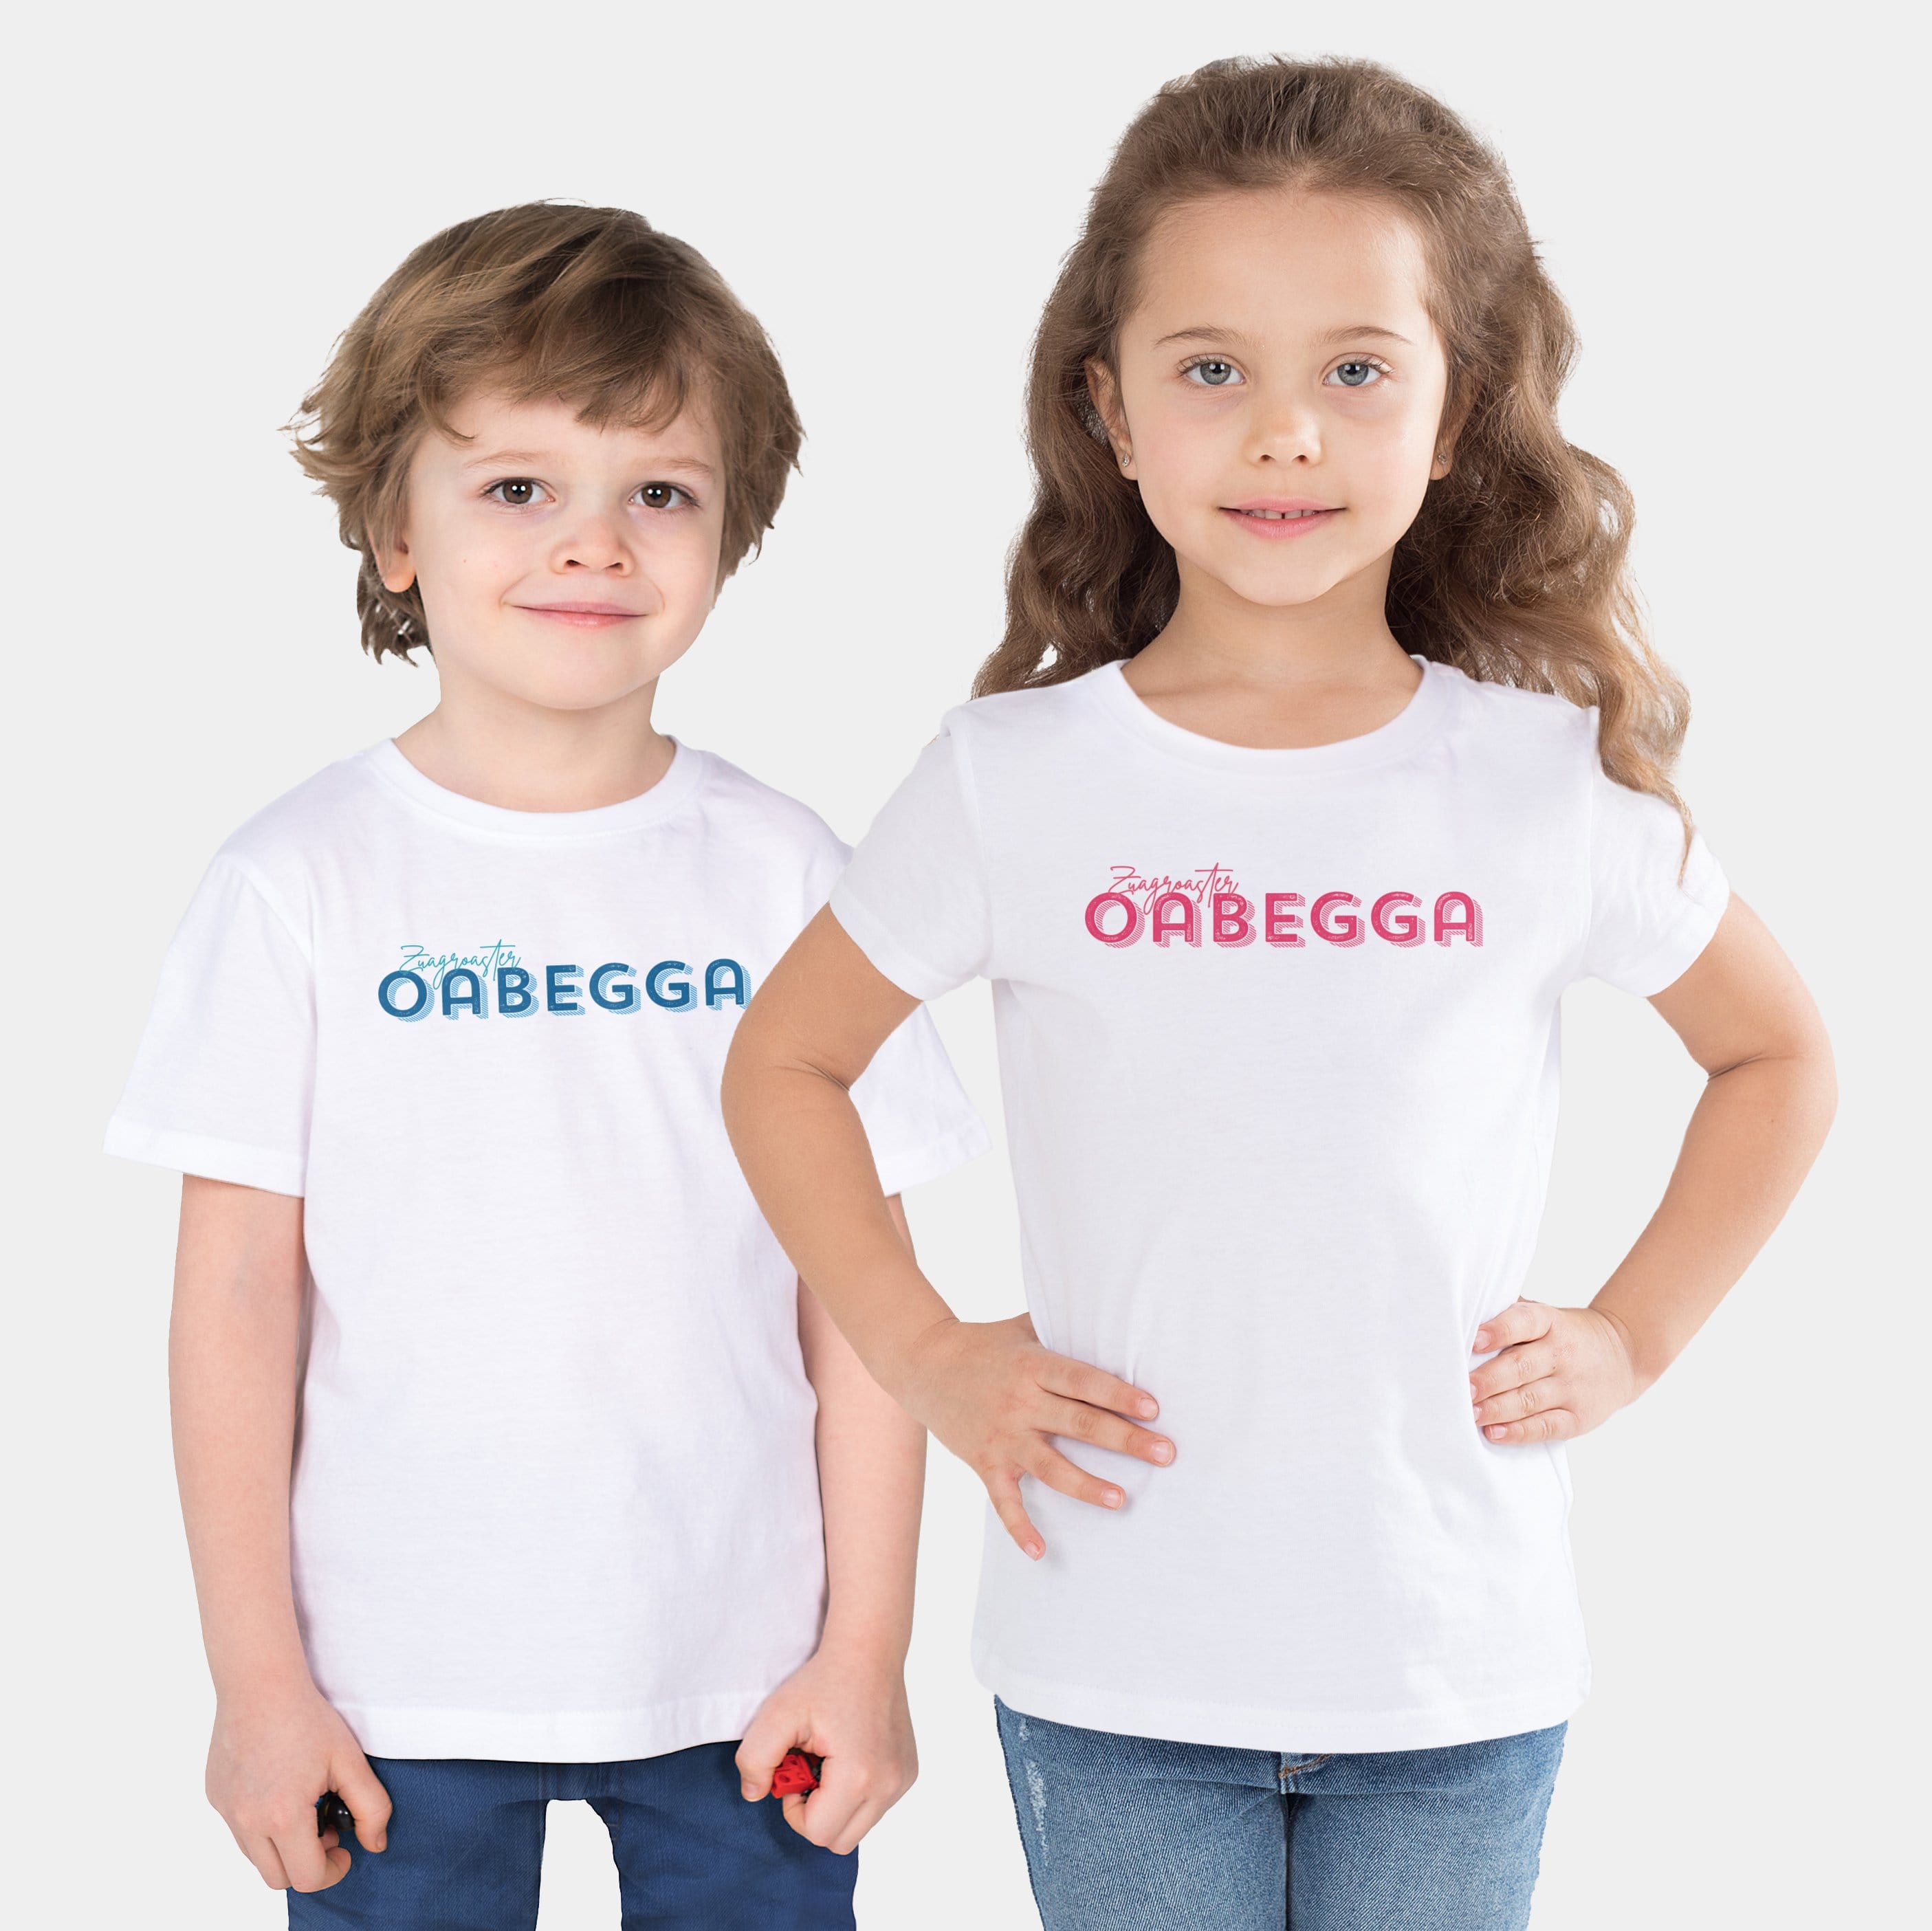 HEITER & LÄSSIG Kinder-T-Shirt "Zuagroaster Oabegga" 92/98 / weiß - aus nachhaltiger und fairer Produktion